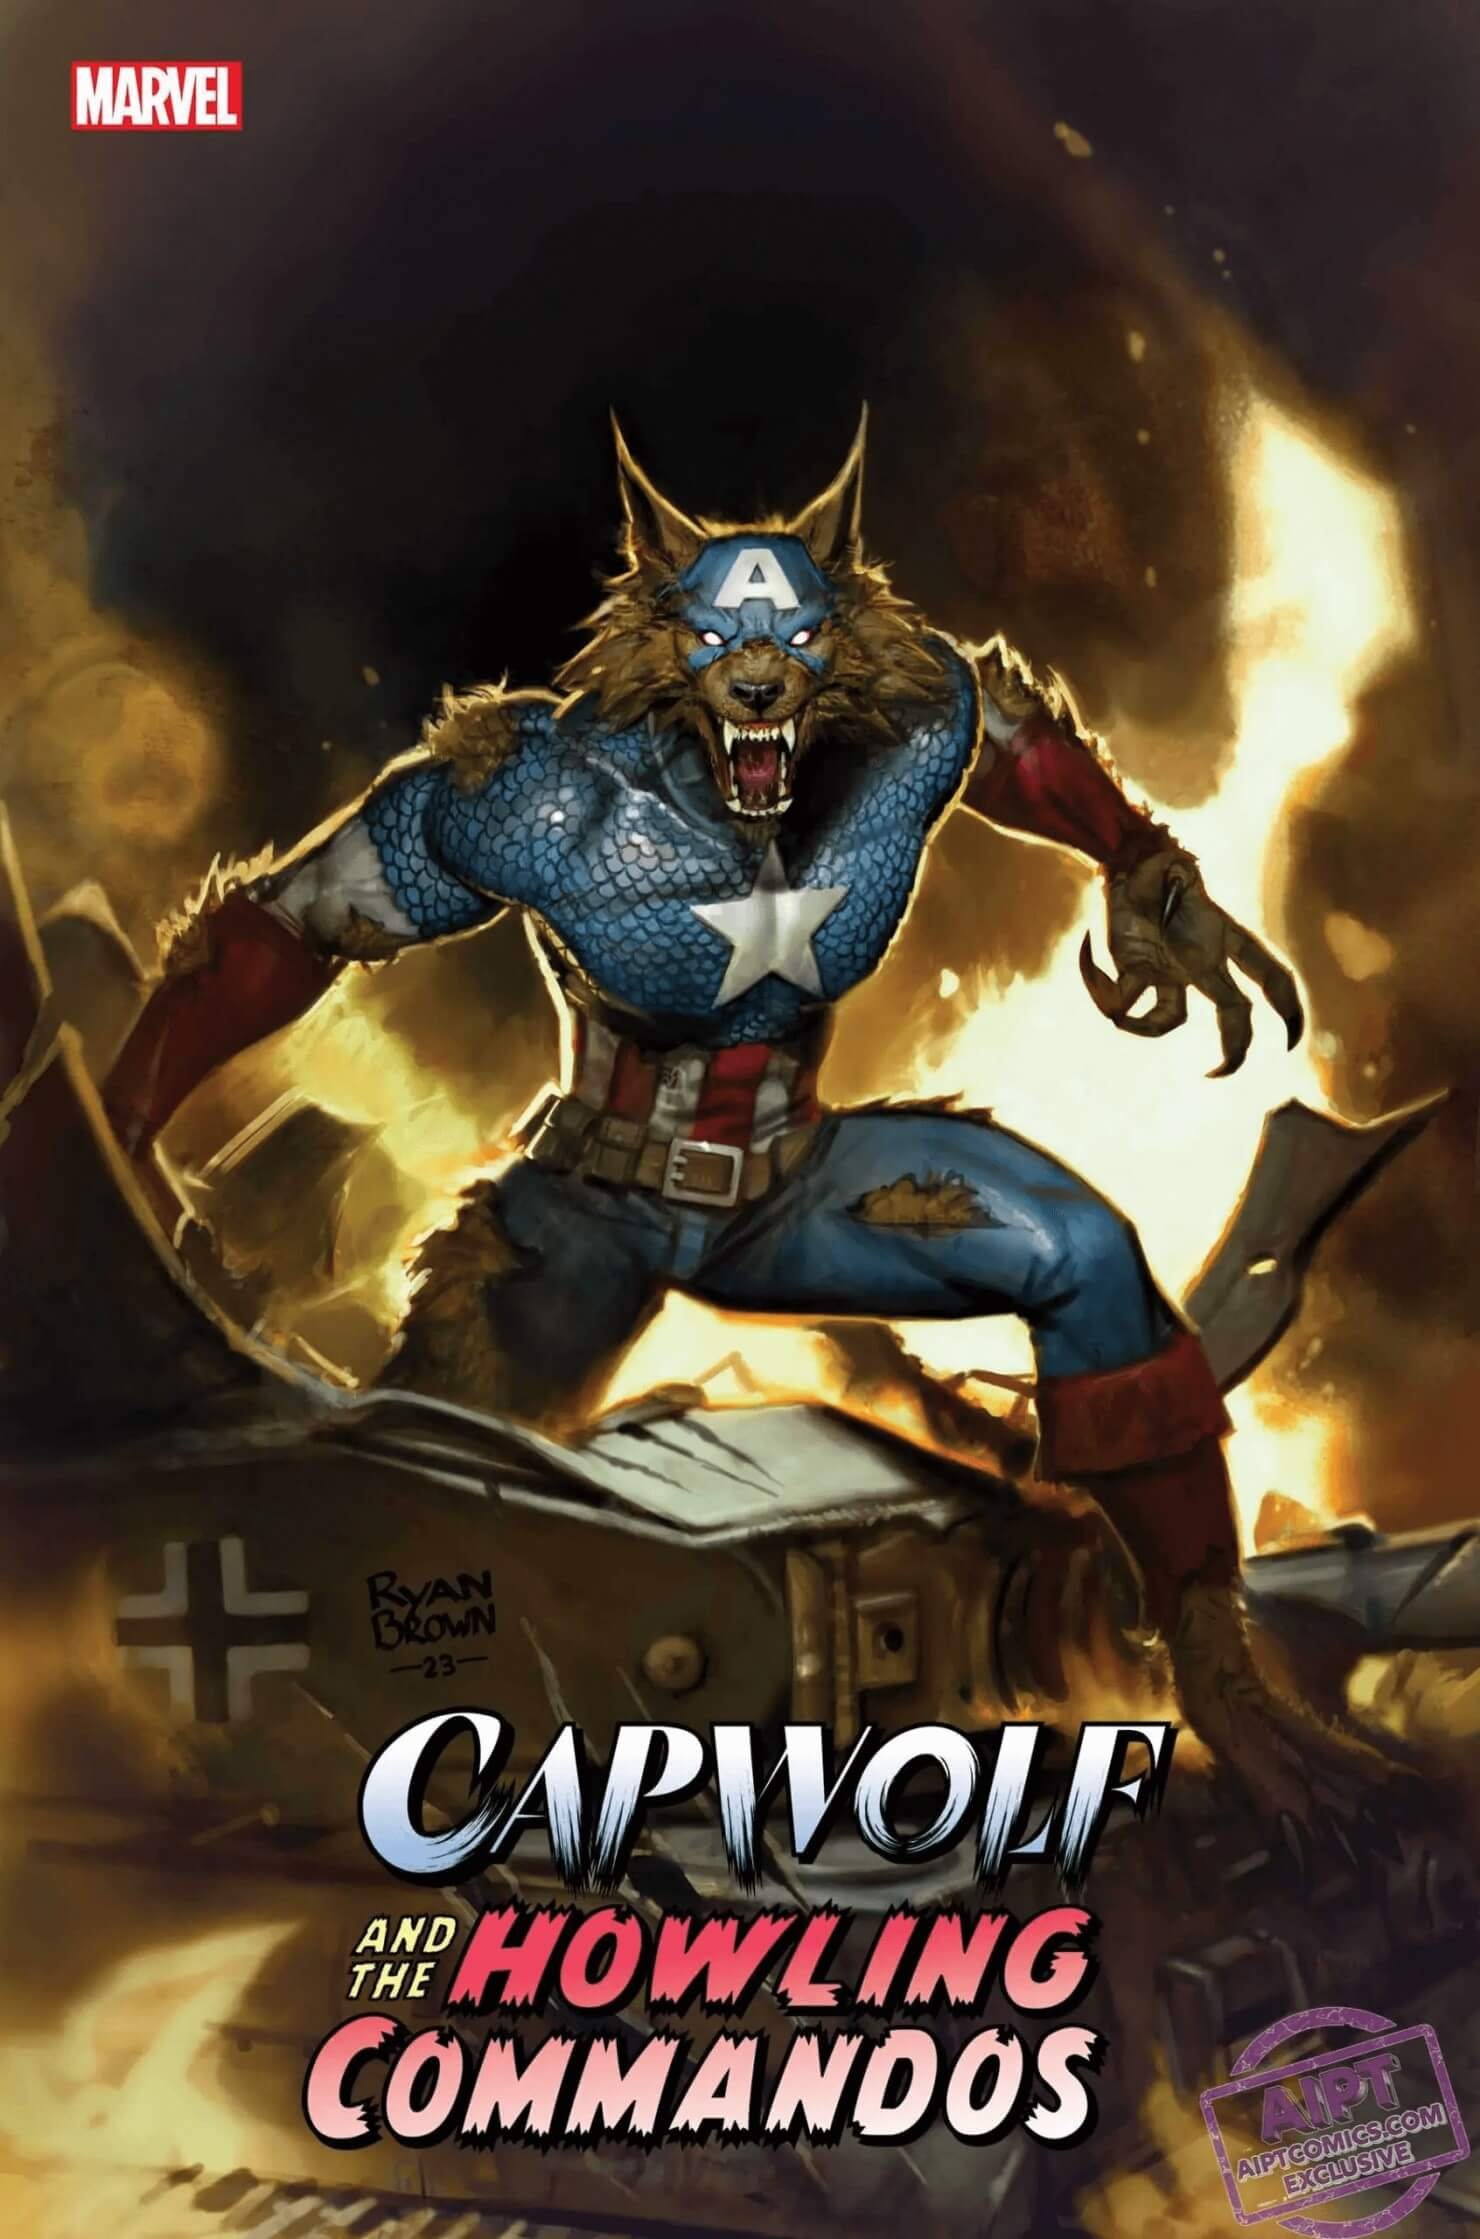 Couverture de Capwolf &amp ; the Howling Commandos 1, par Ryan Brown